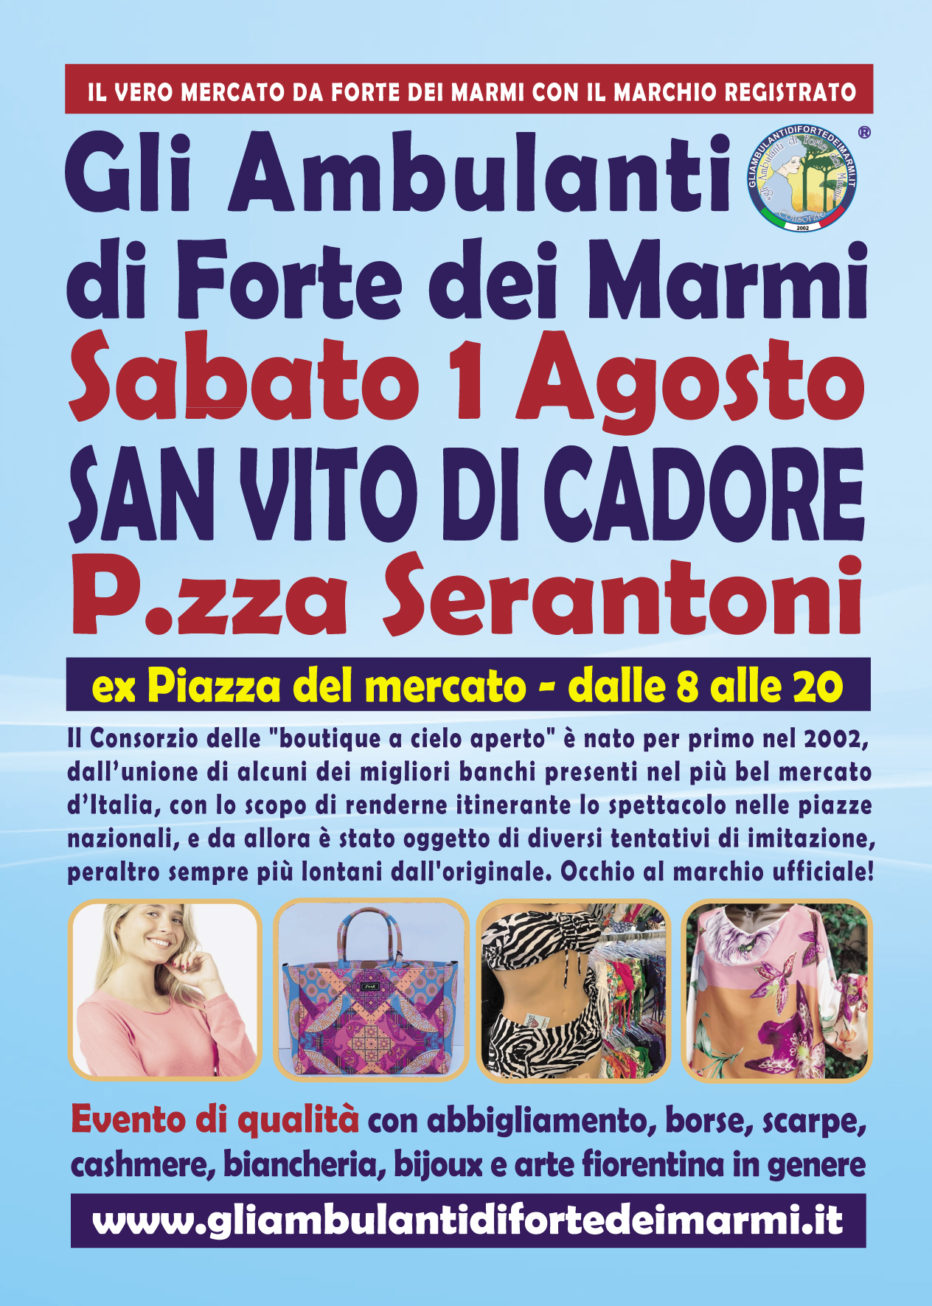 “Gli Ambulanti di Forte dei Marmi®” a San Vito di Cadore sabato 1 agosto